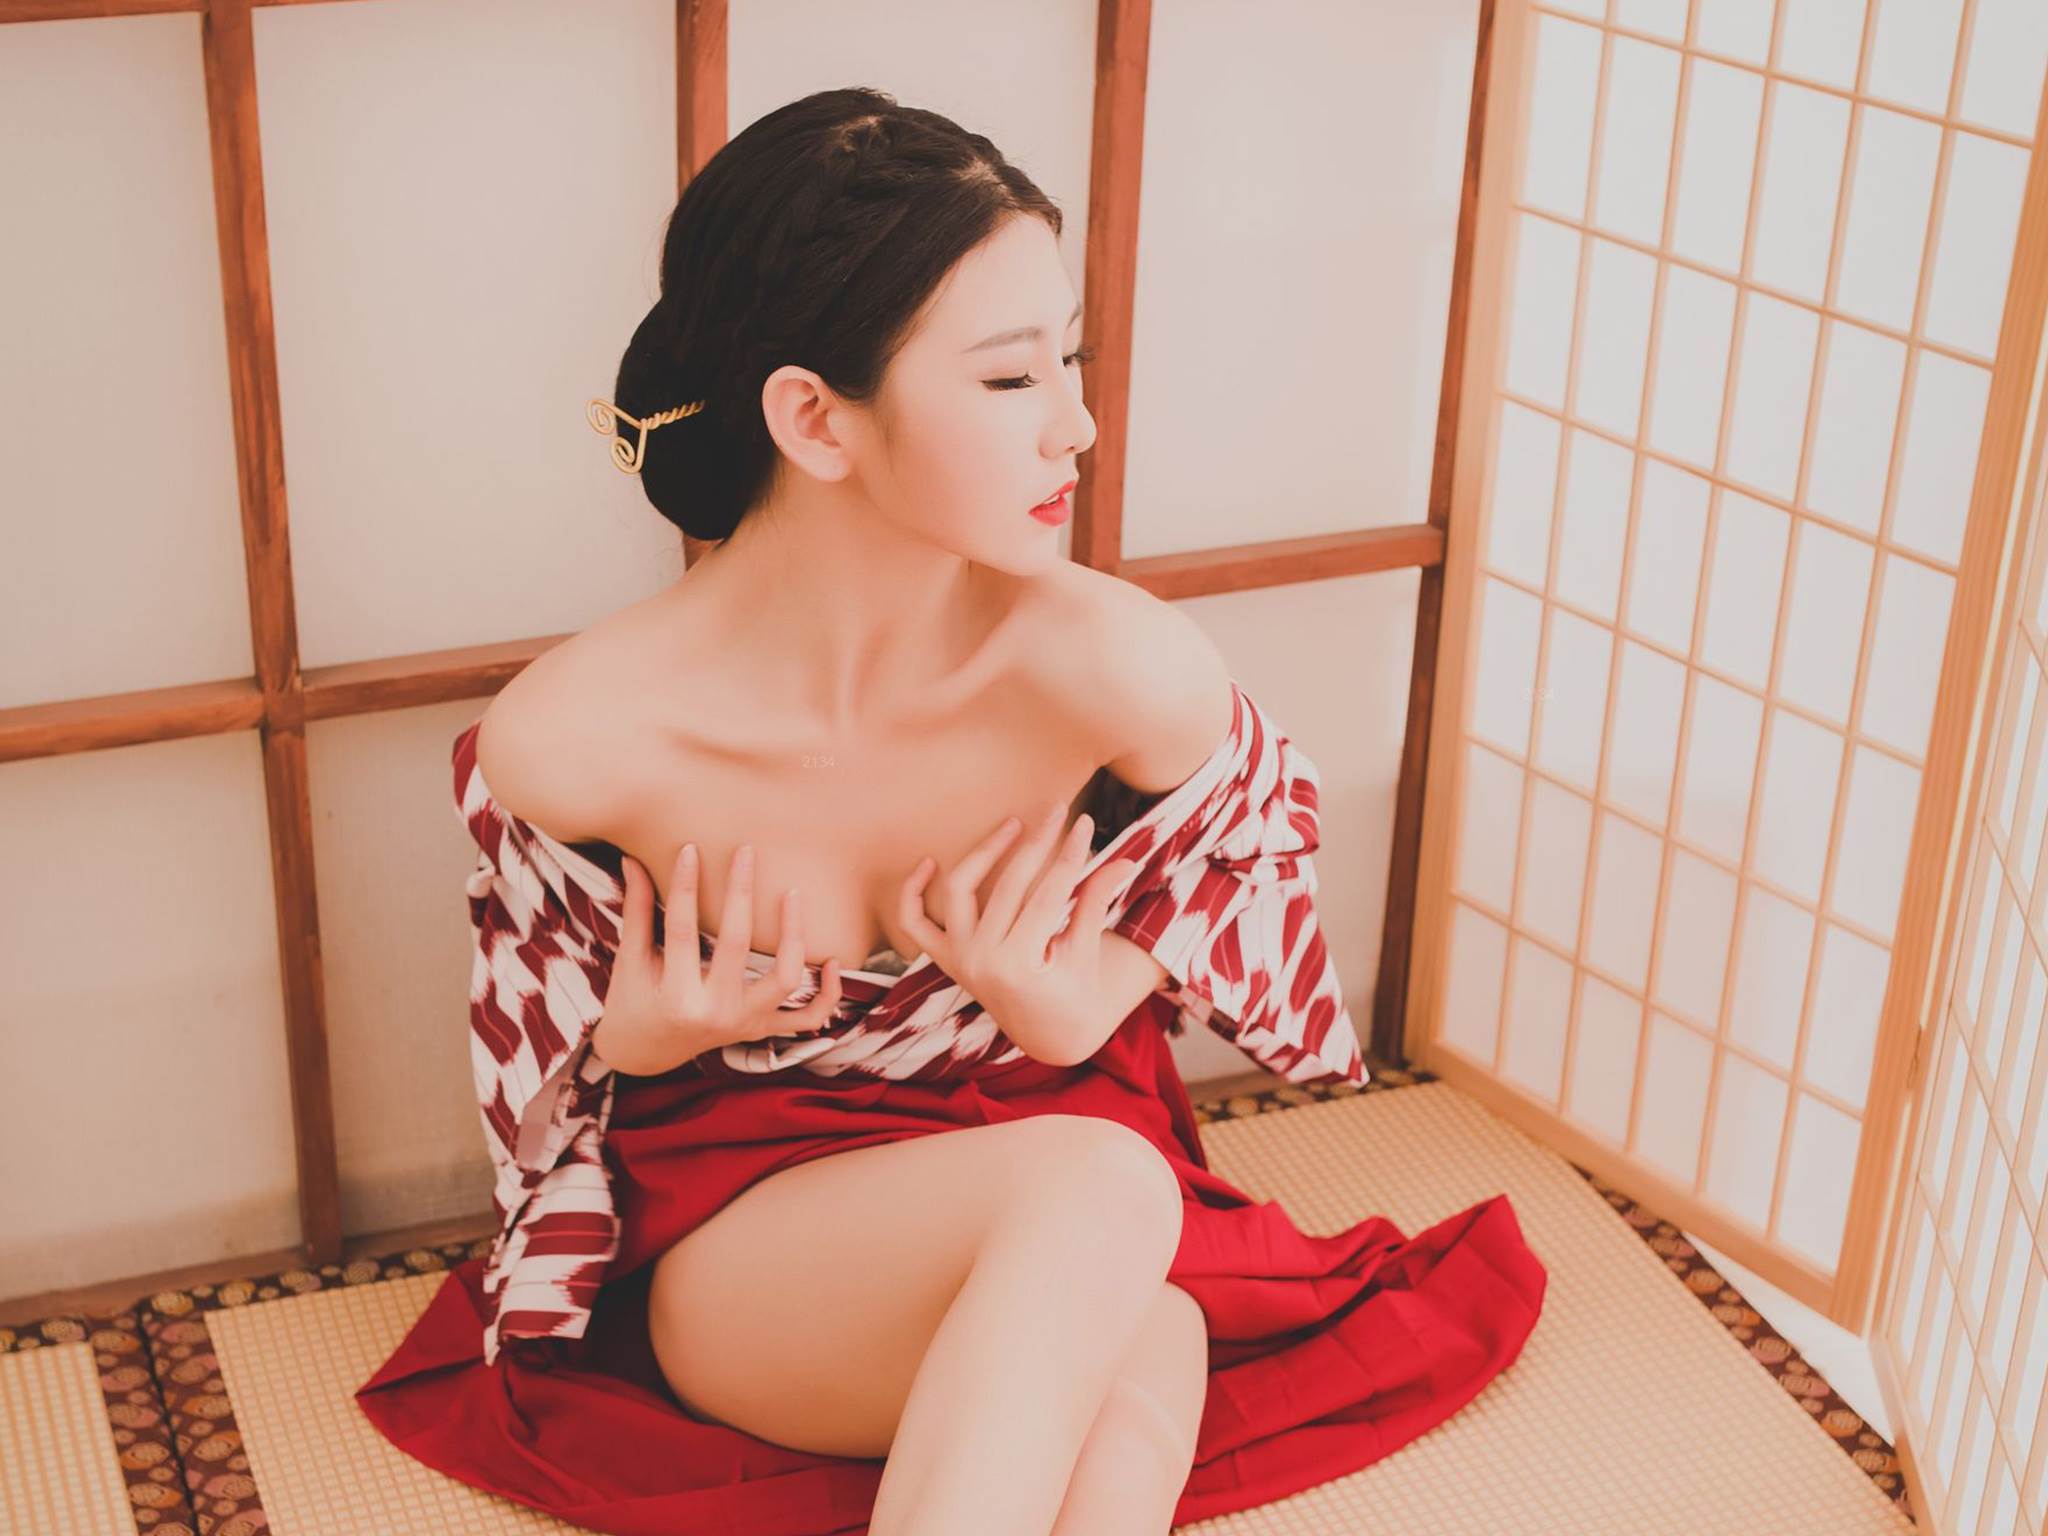 日本性感和服美女大胸乳巨骚浪写真图片平板壁纸 日本美女,和服美女,大胸美女,乳巨美女,第4张